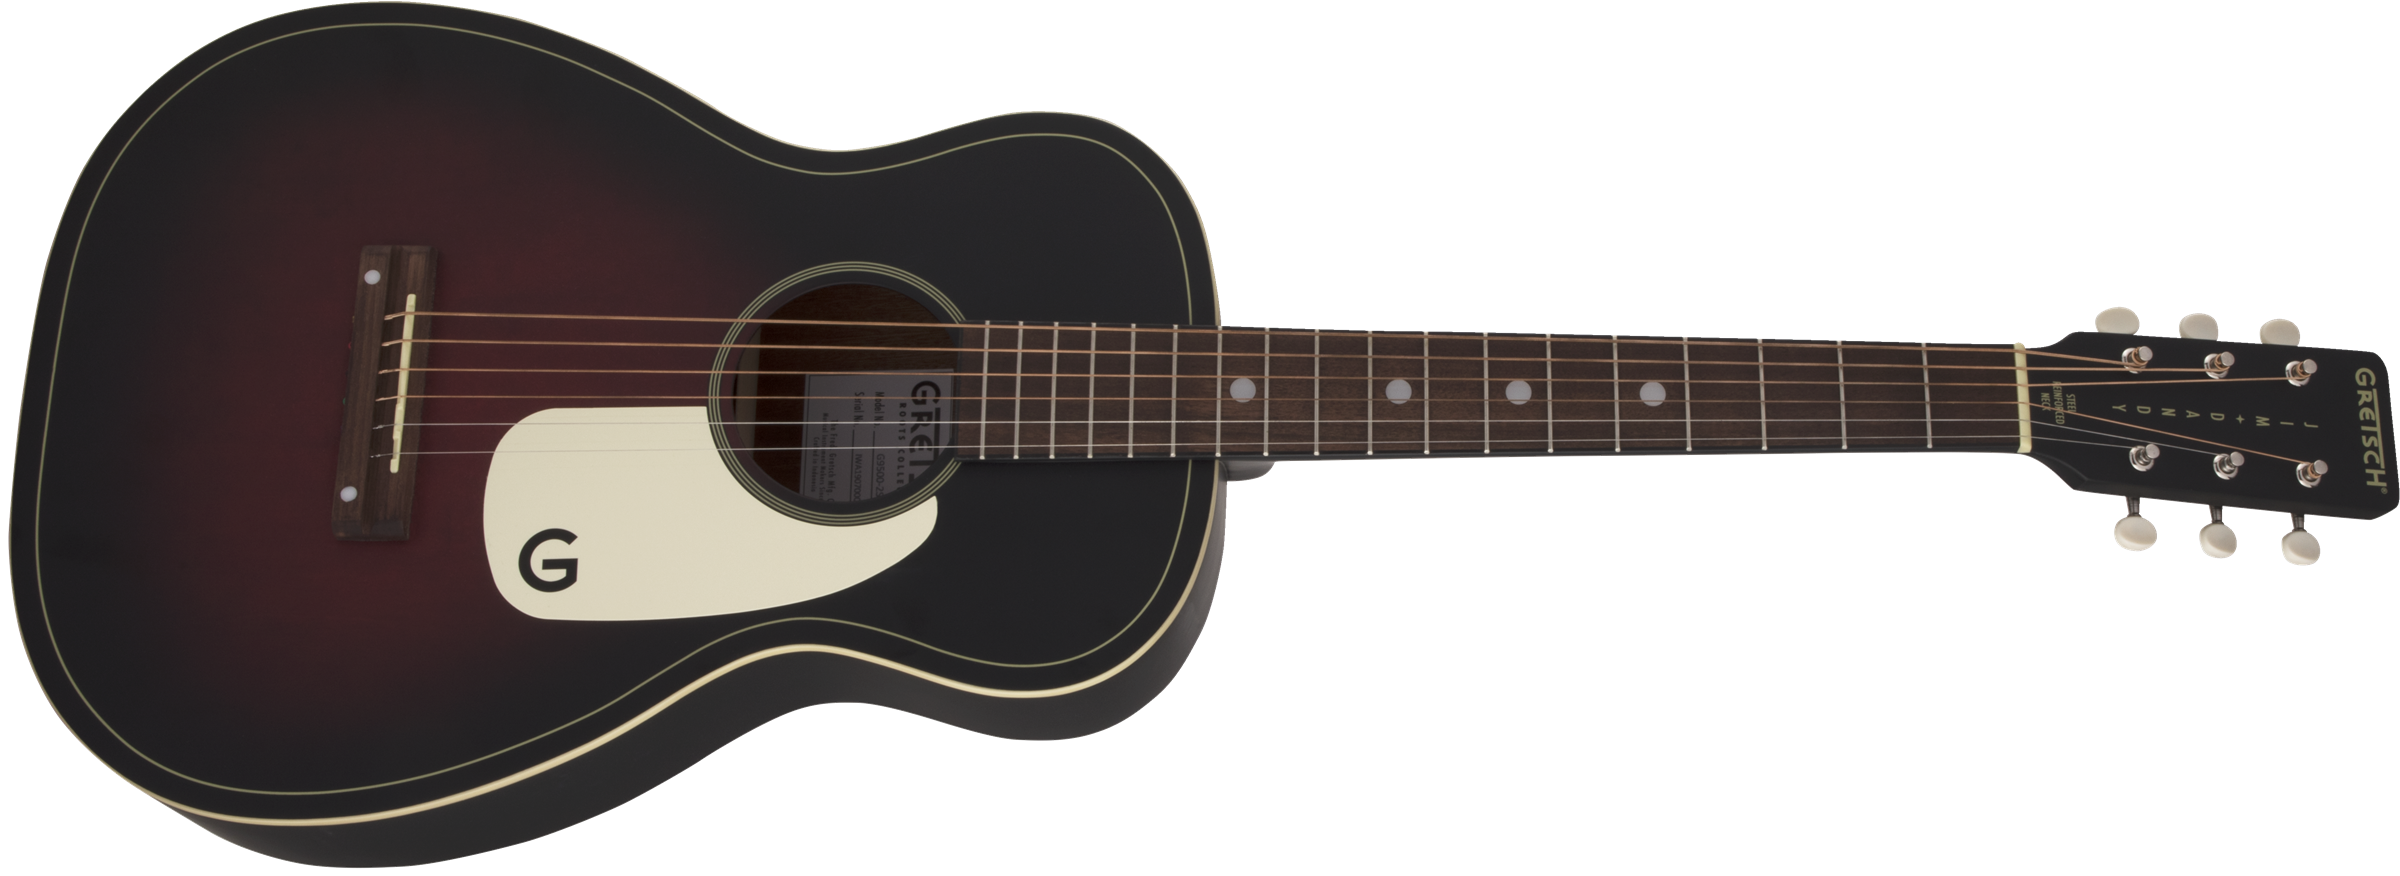 Gretsch®  Guitar- Jim Dandy Acoustic Guitar G9500 JIM DANDY™